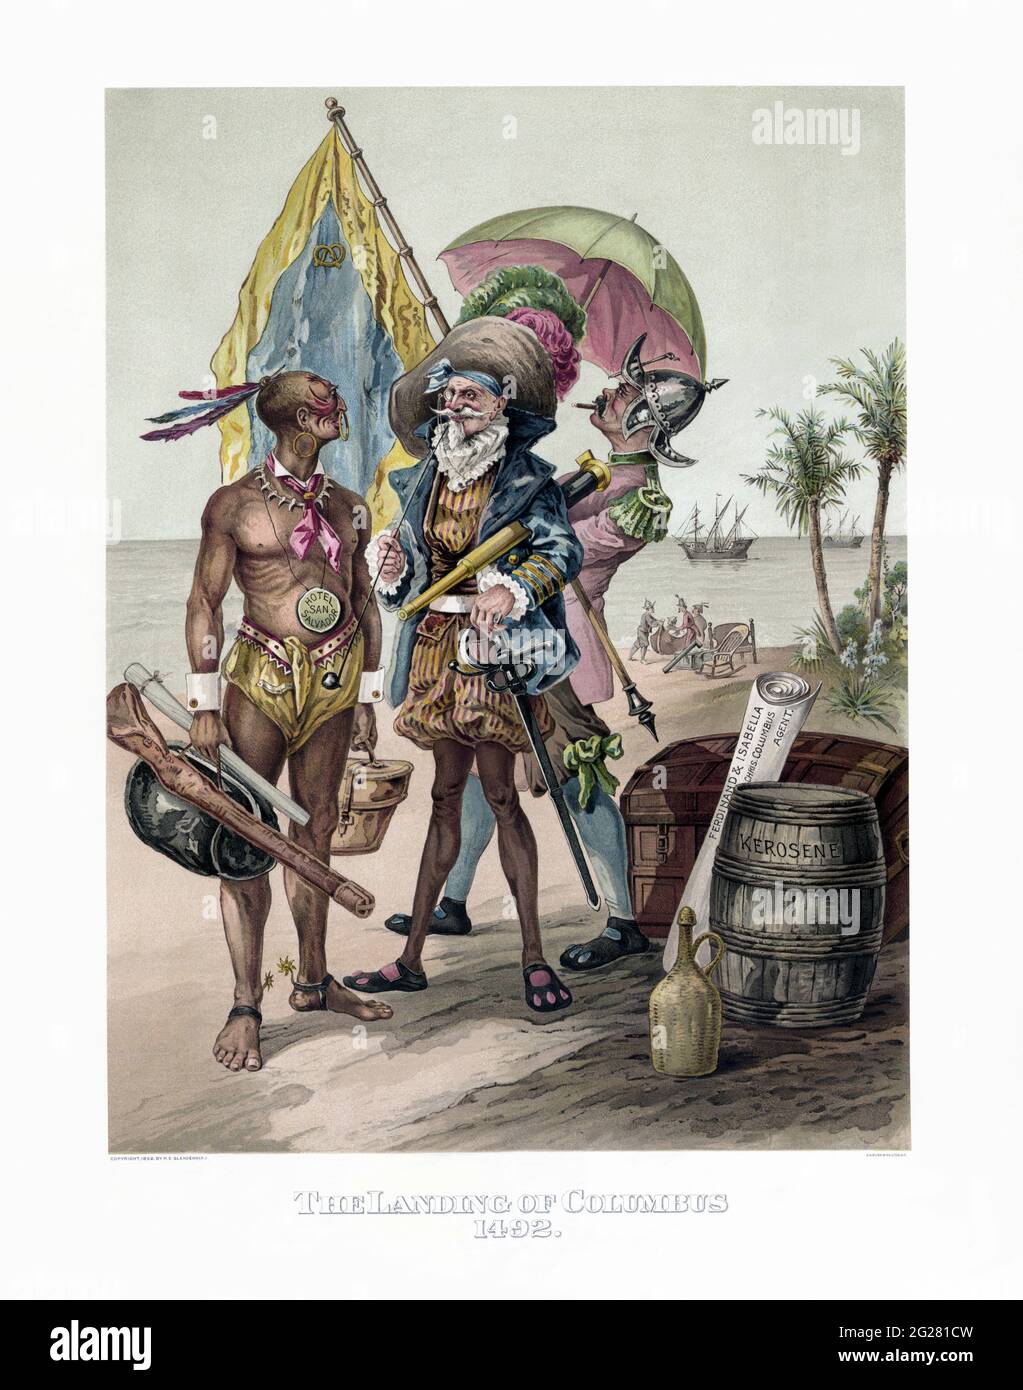 Immagine d'epoca di una rappresentazione satirica dell'atterraggio di Cristoforo Colombo nel 1492. Foto Stock